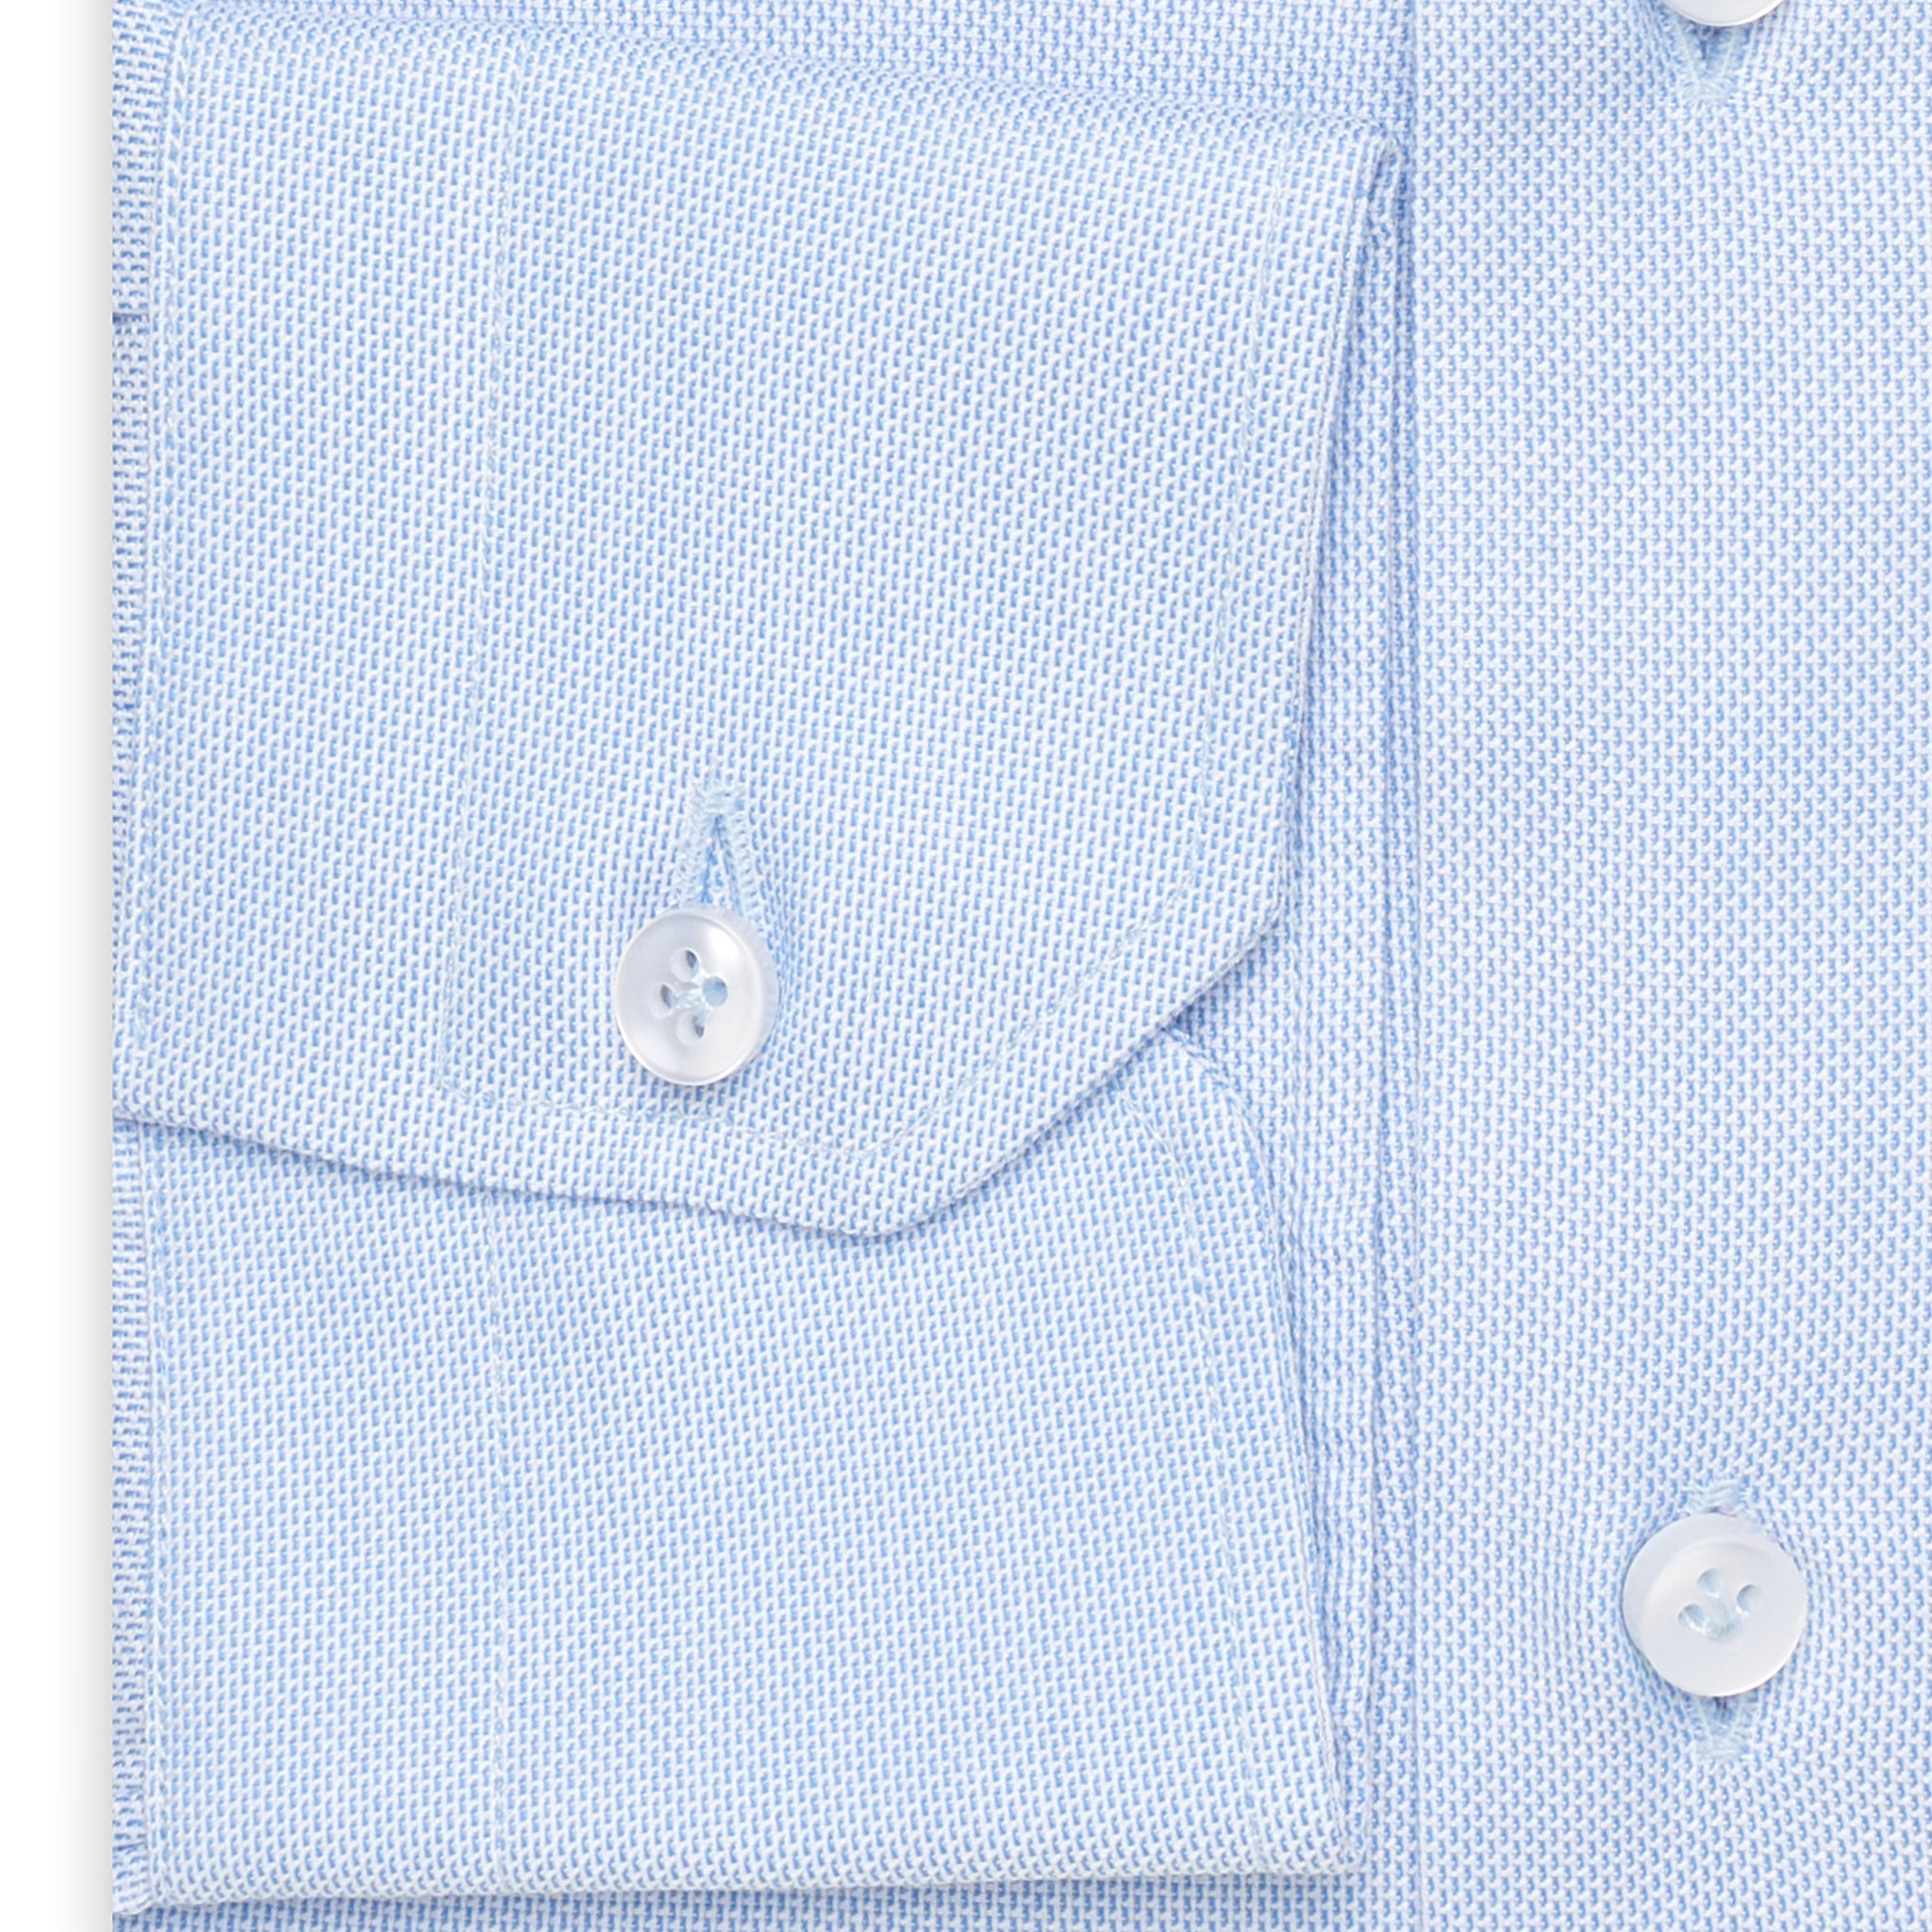 SARTORIO Napoli by KITON Light Blue Cotton Dress Shirt NEW Slim Fit SARTORIO